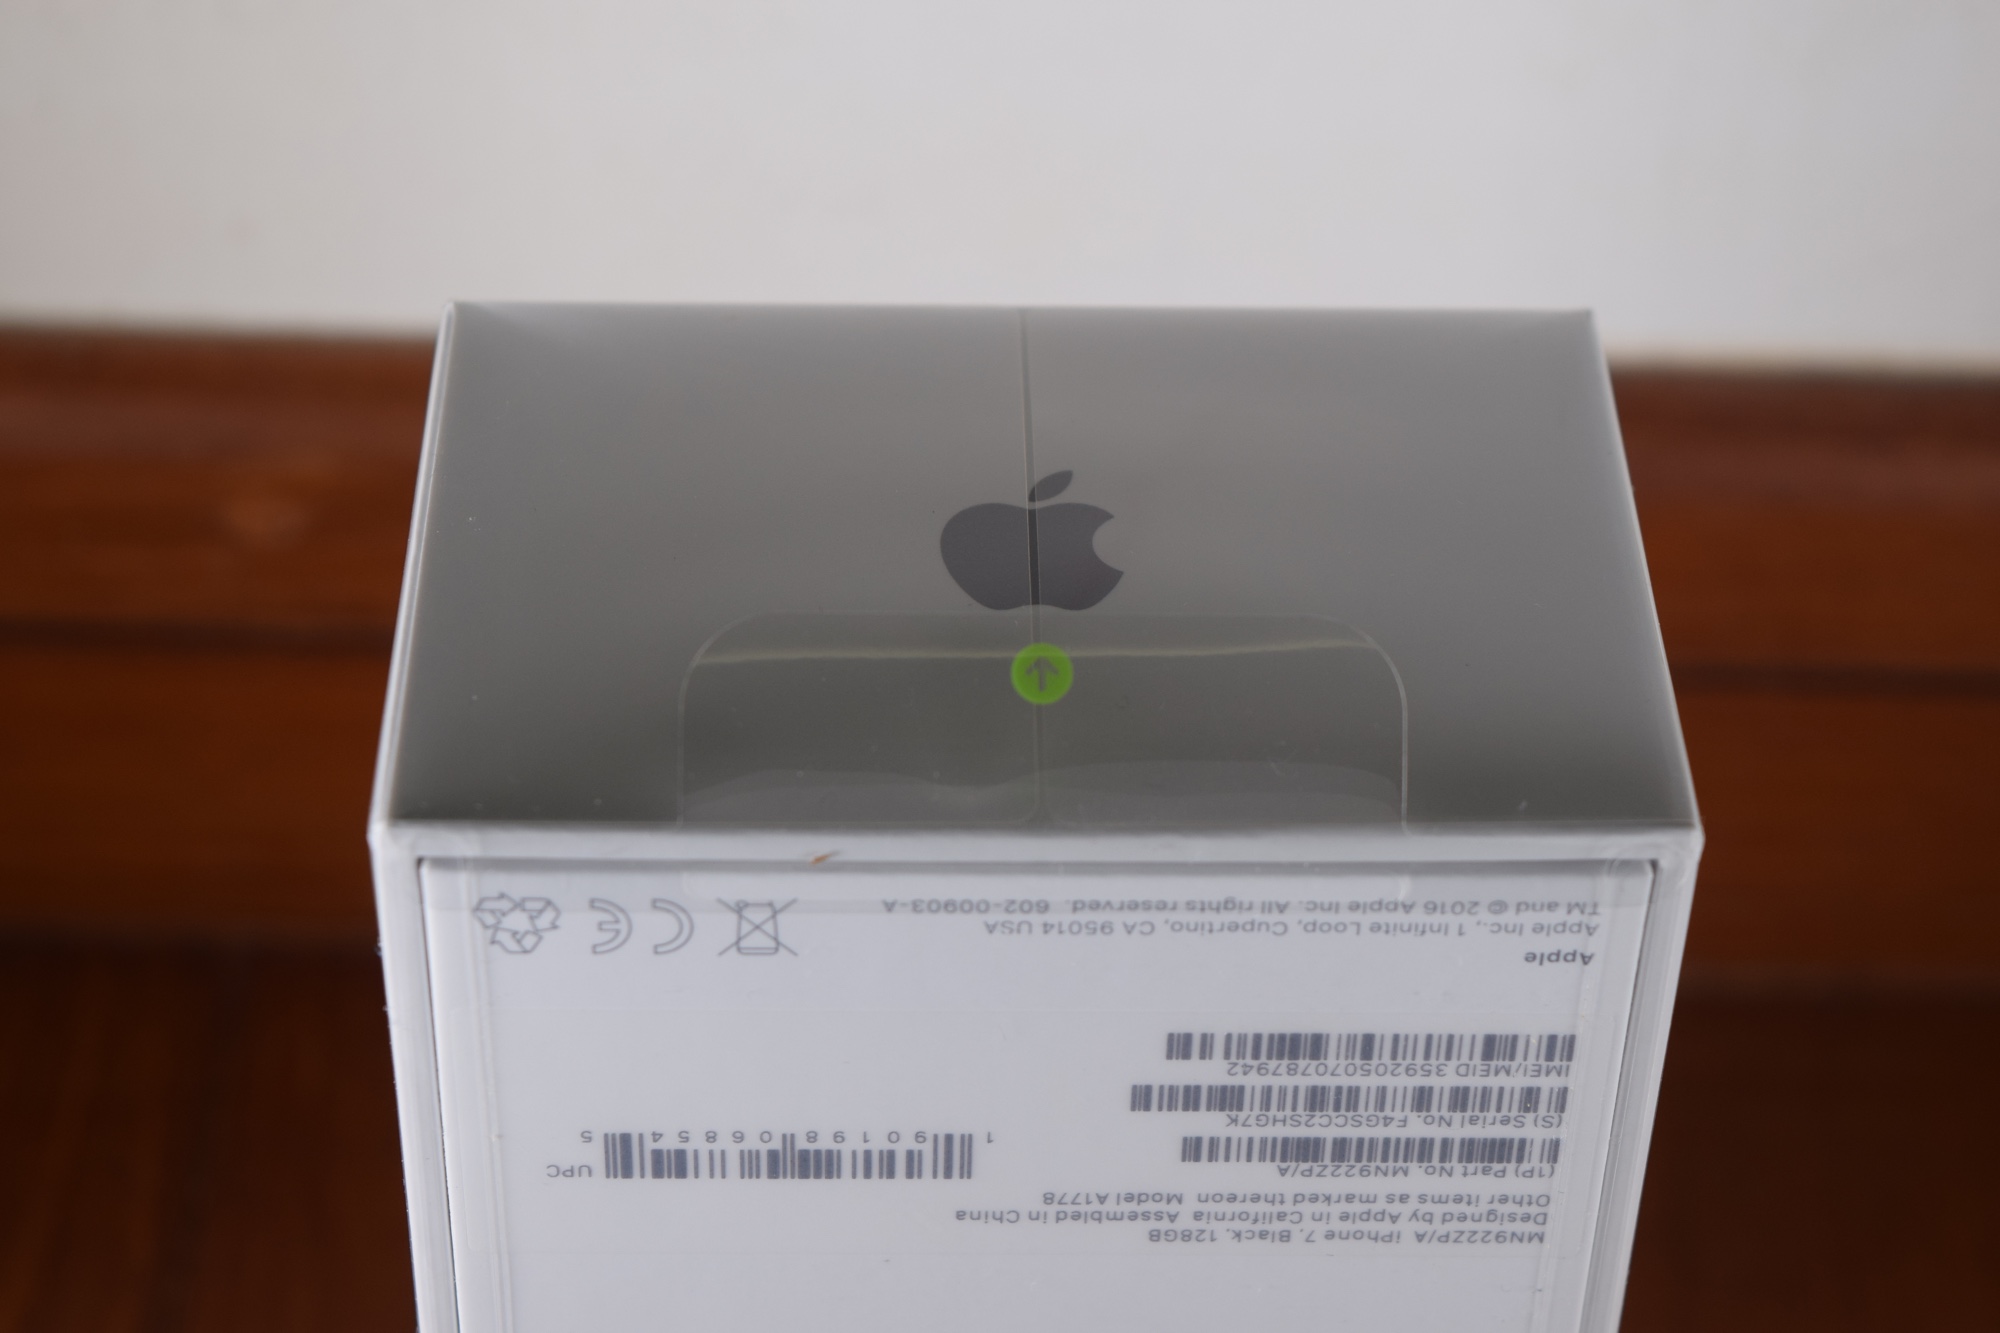 iPhone 7 Plus packaging